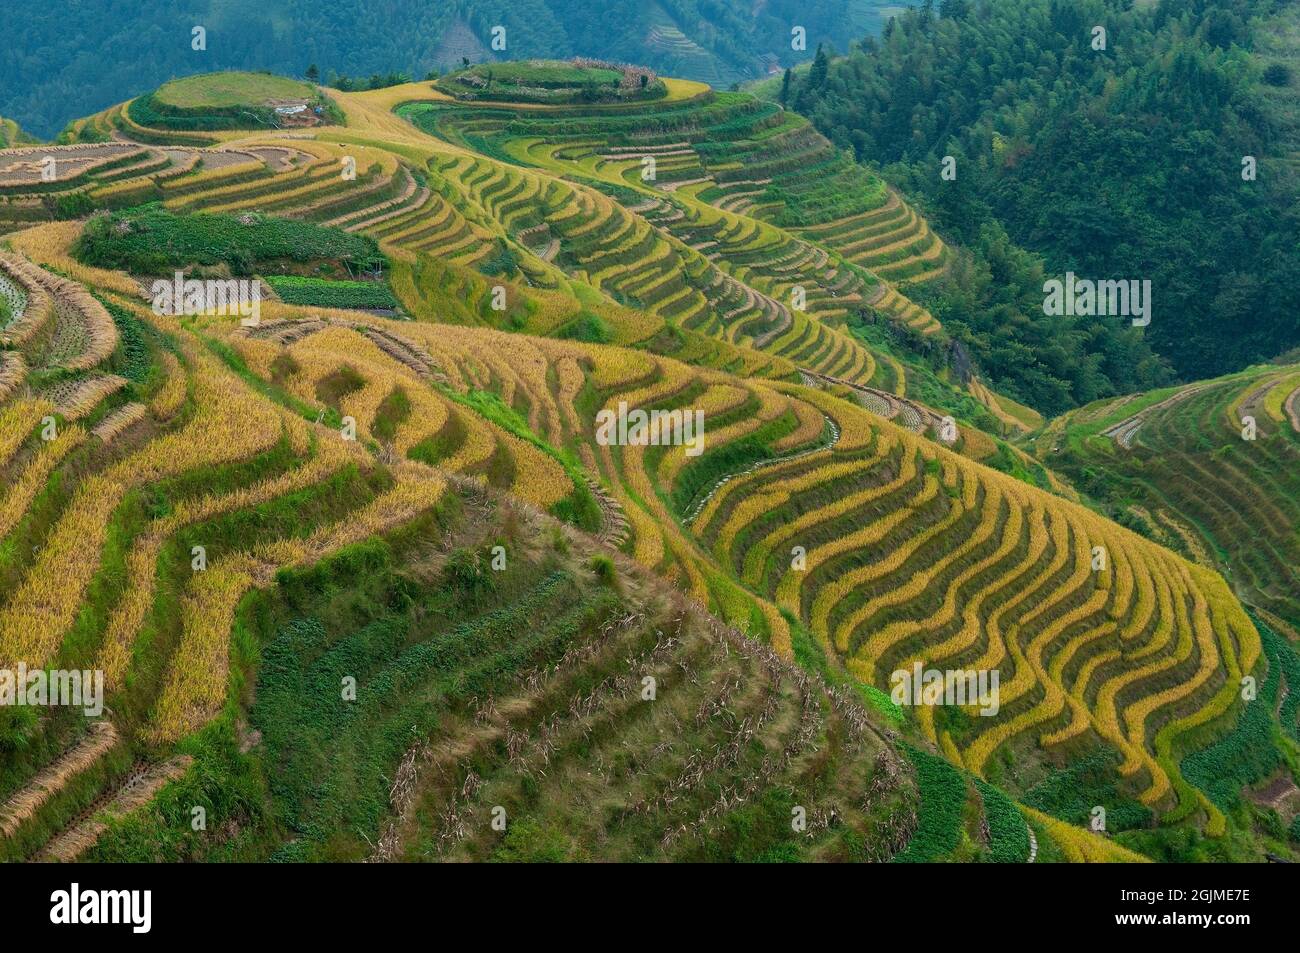 Ping an Terraced Fields durante la temporada de cosecha, ubicado en el área escénica de Longji Terraced Fields, condado de Longsheng, provincia de Guangxi, China. Foto de stock